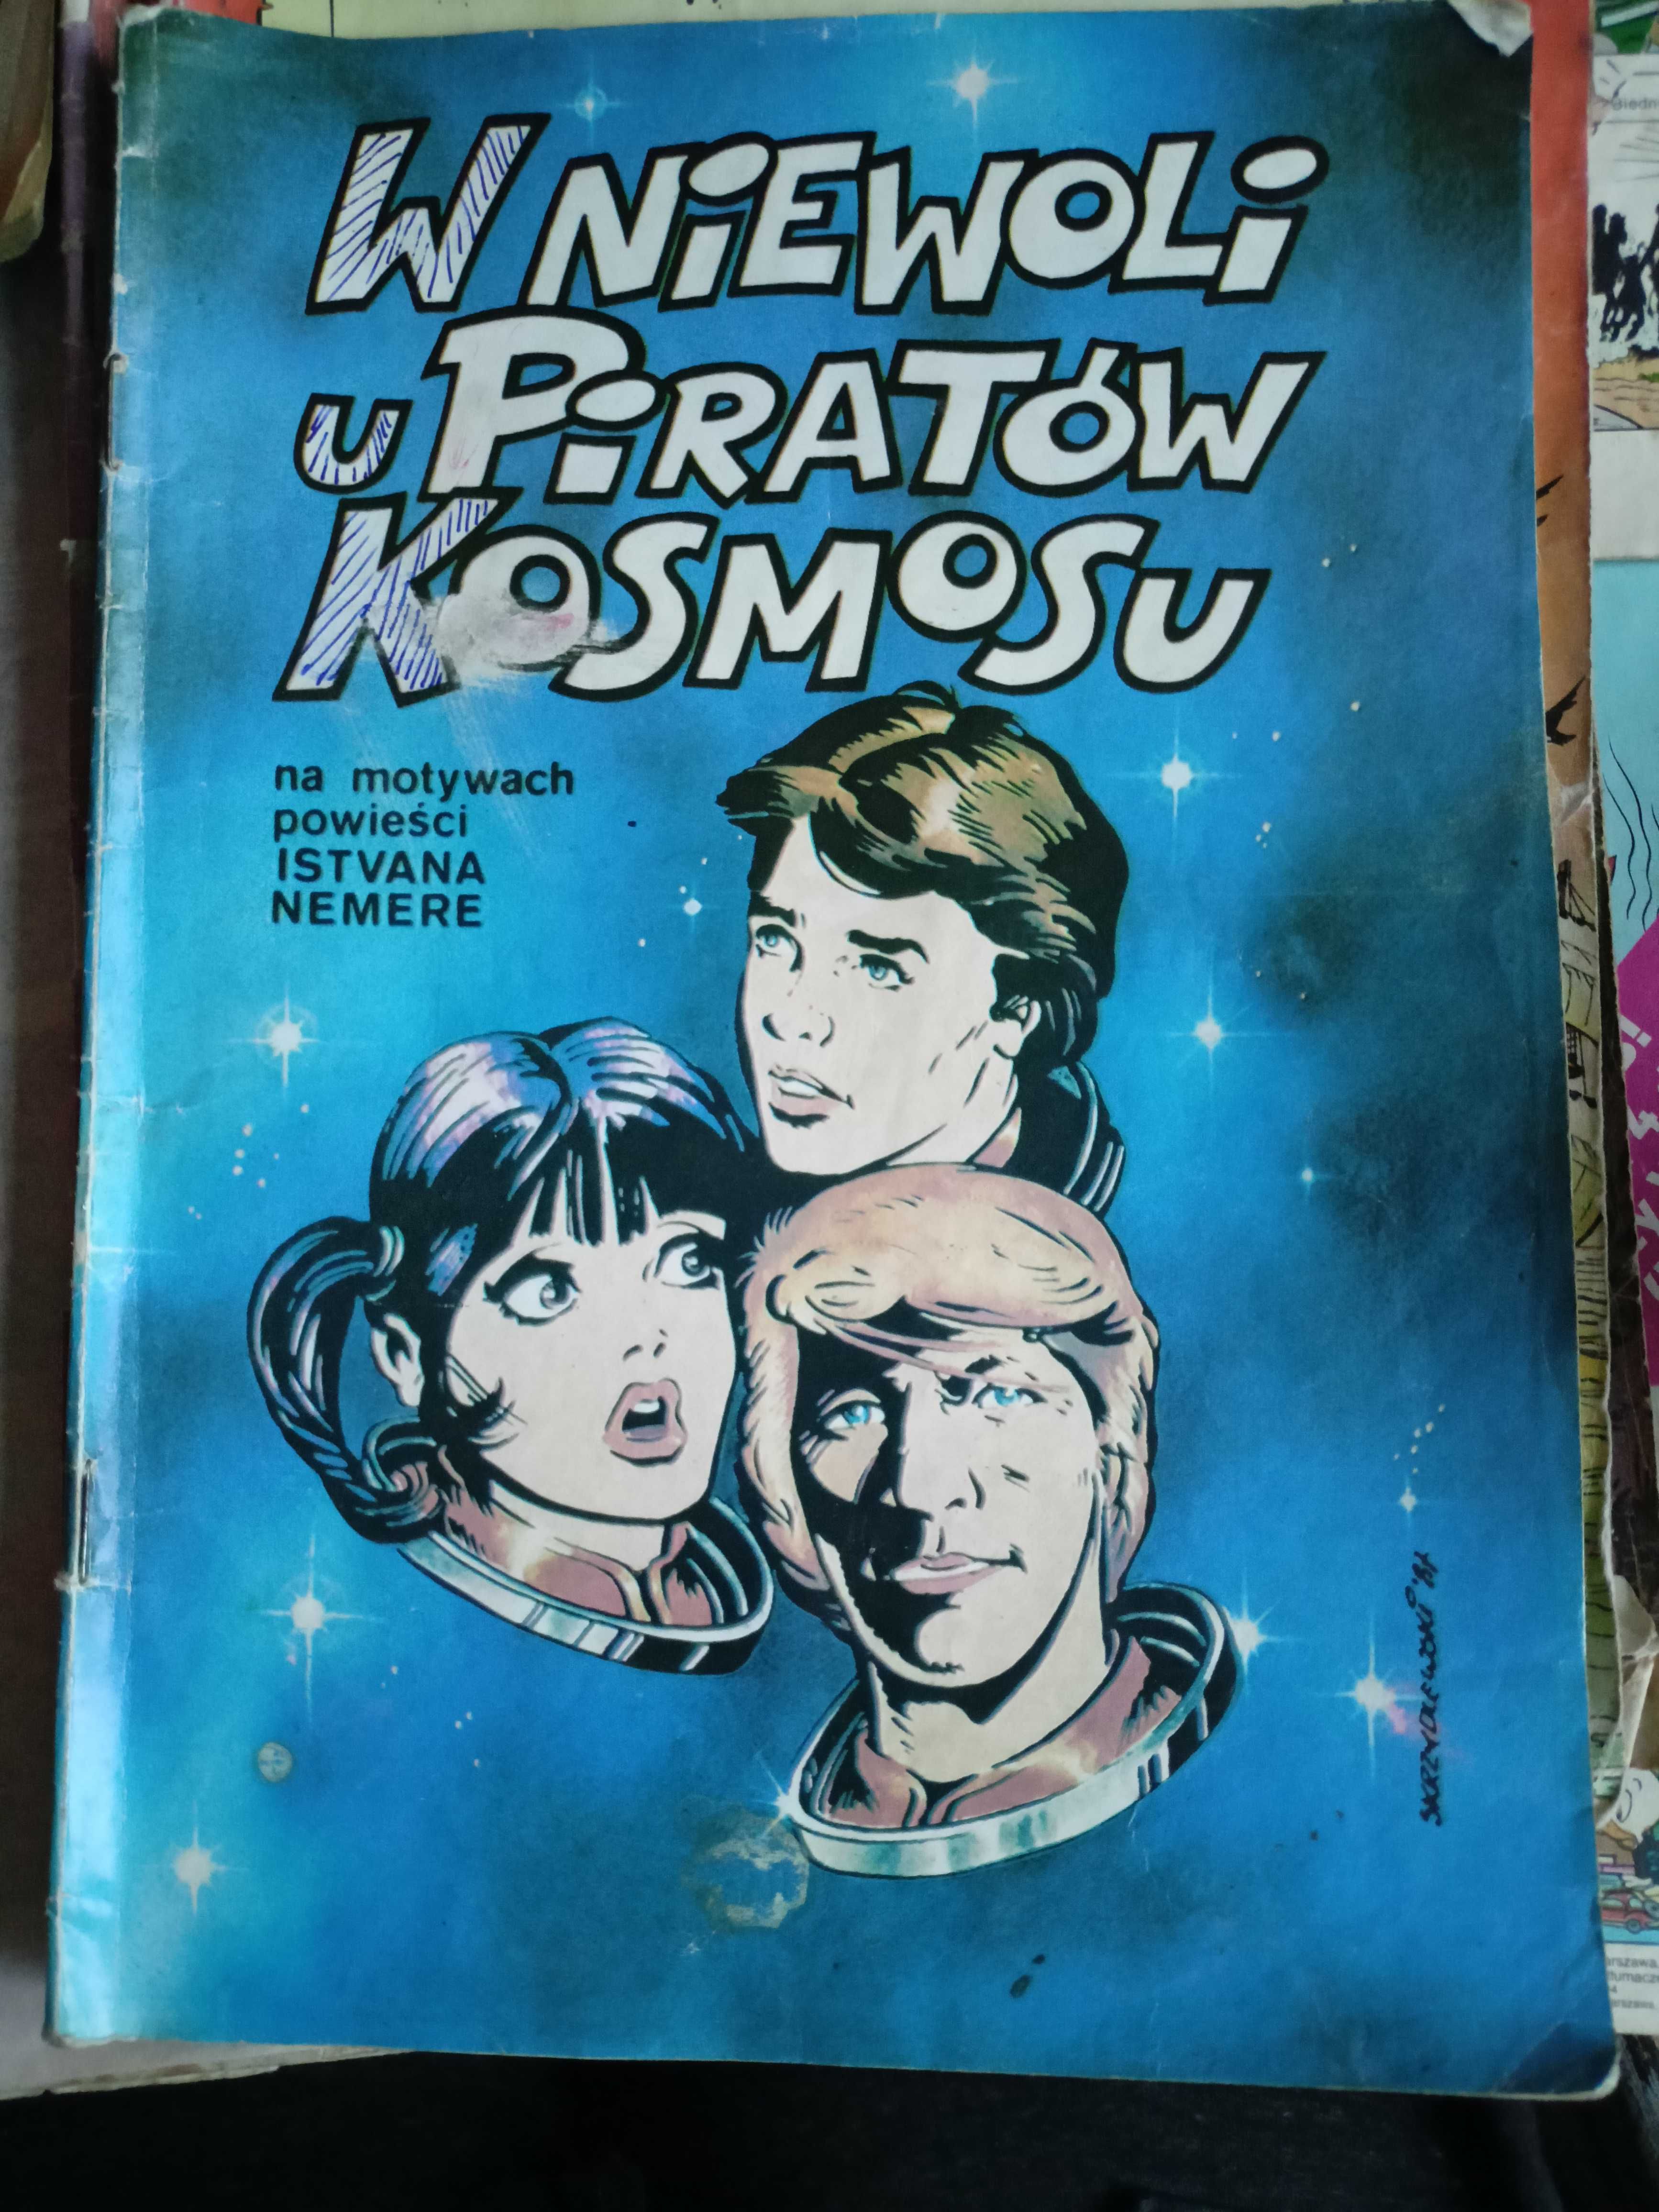 Komiks W niewoli u piratów kosmosu  1990r.